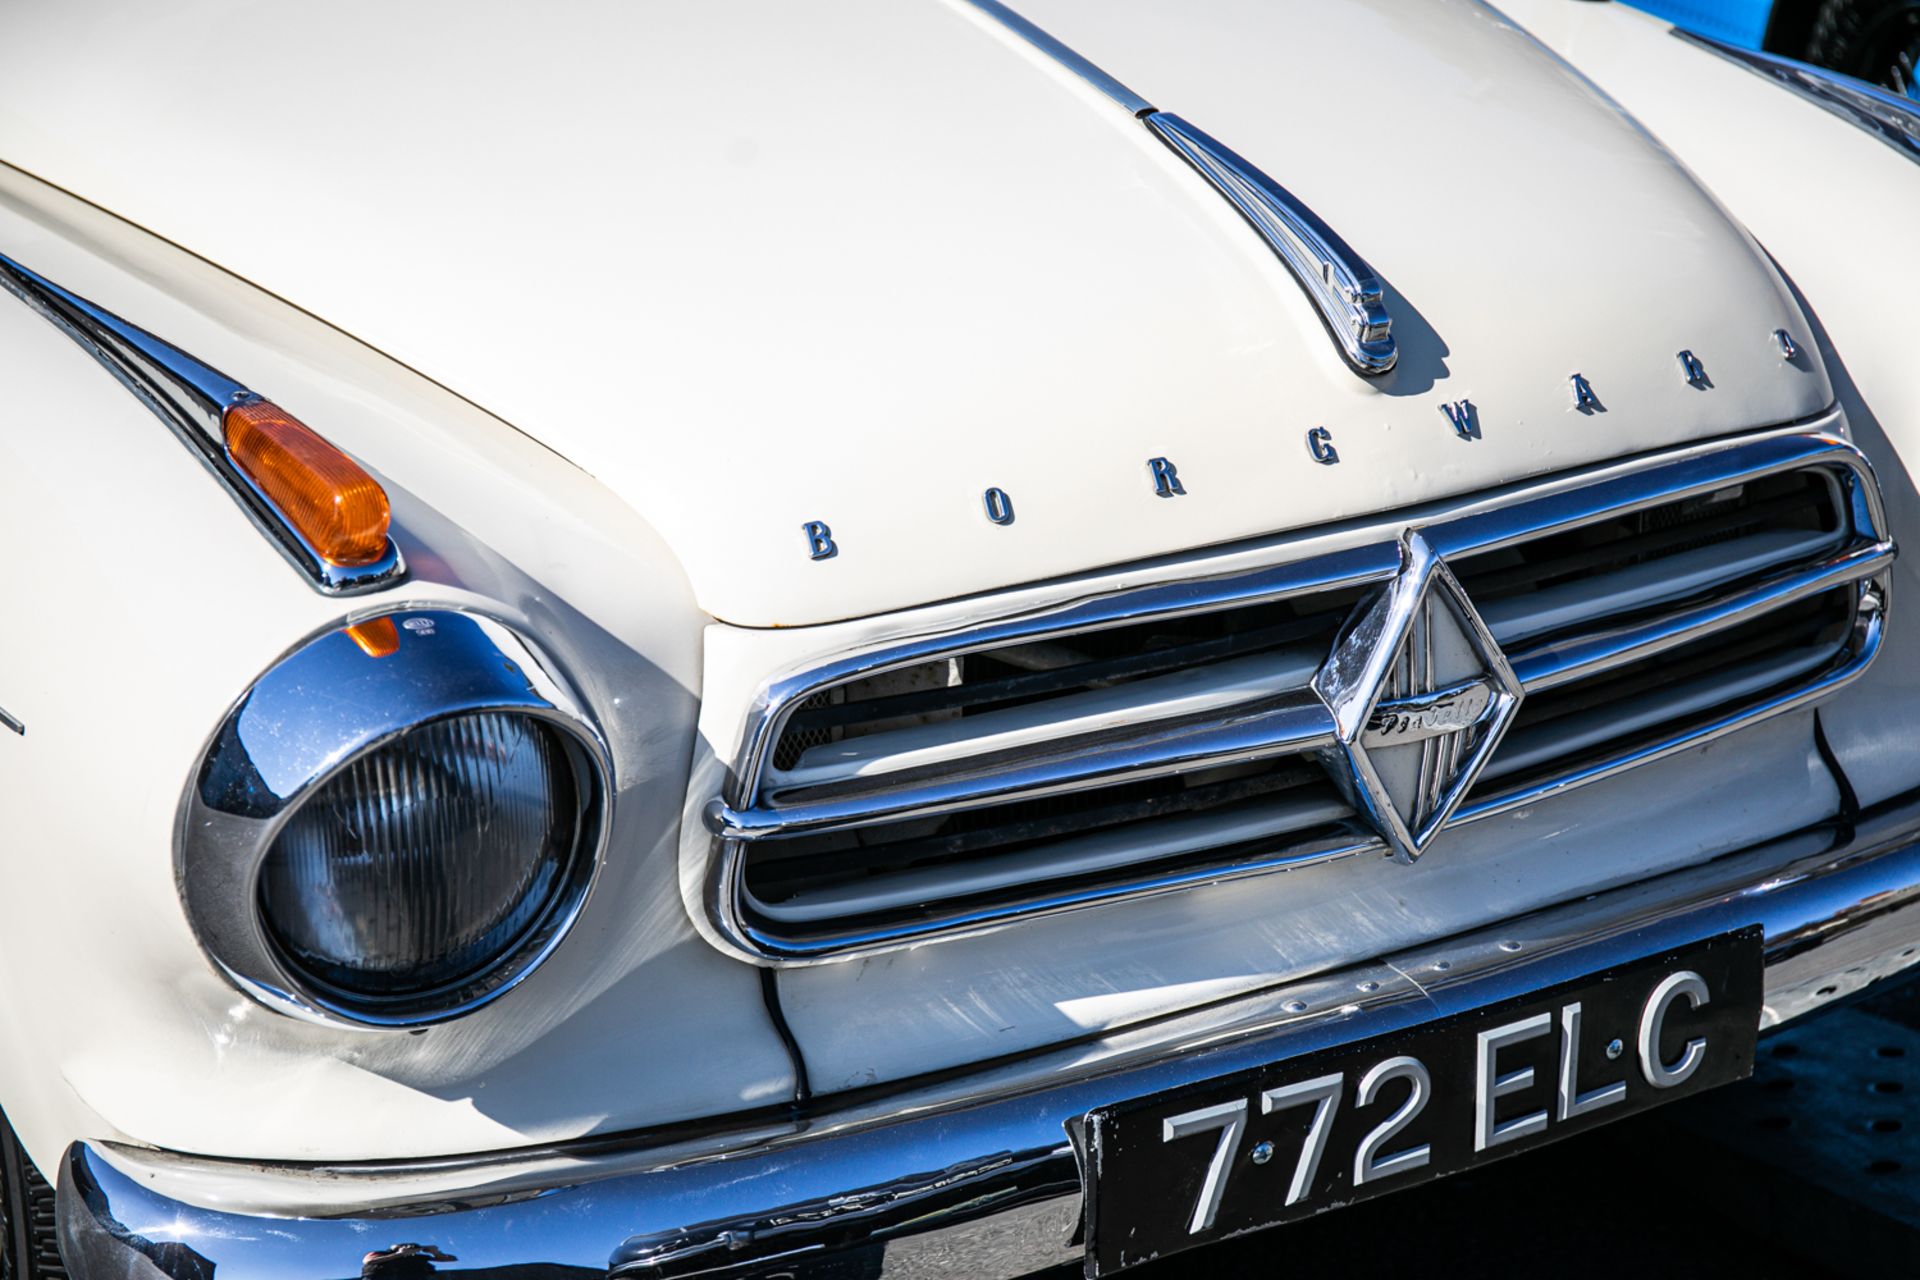 1959 Borgward Isabella Coupe - Image 13 of 20